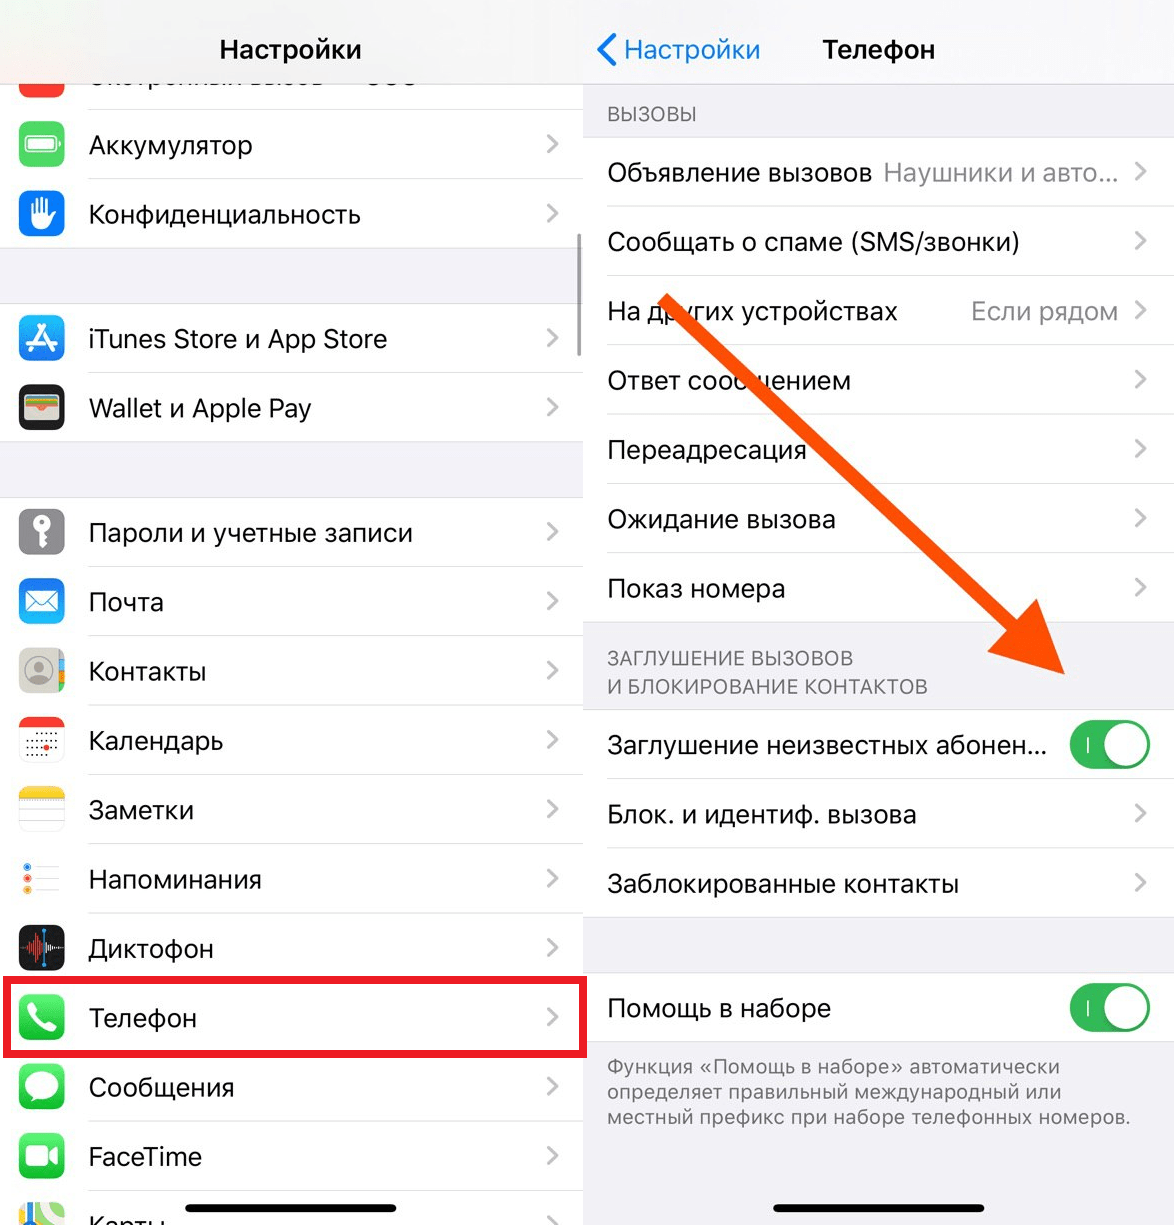 Андроид прослушка: как проверить, защититься, программы, антипрослушка | a-apple.ru